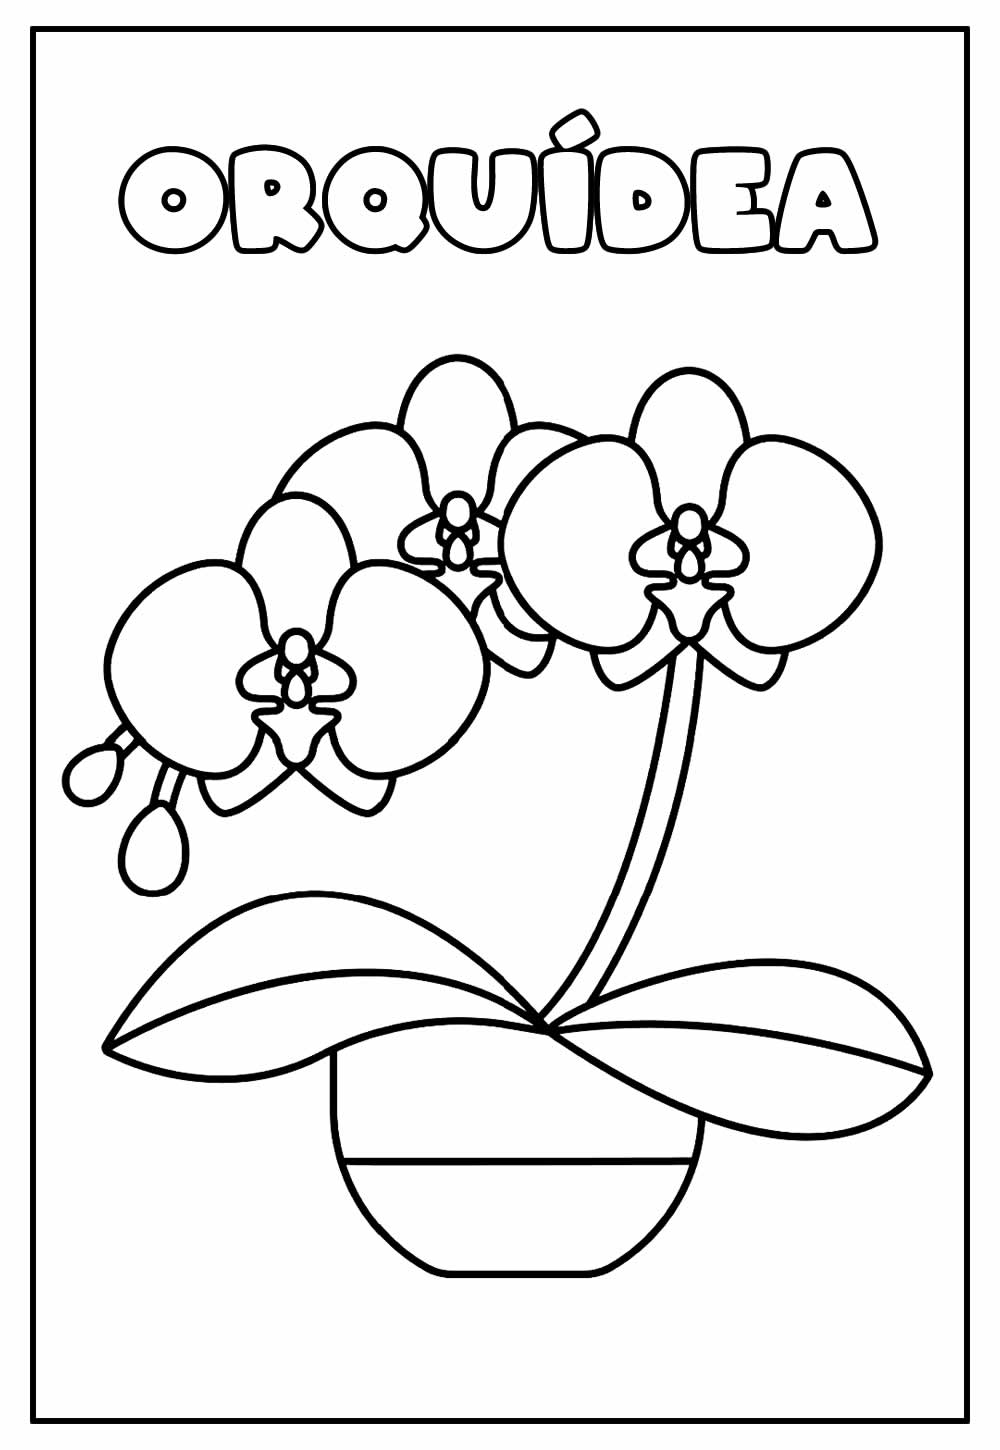 Desenho Educativo de Orquídea para colorir